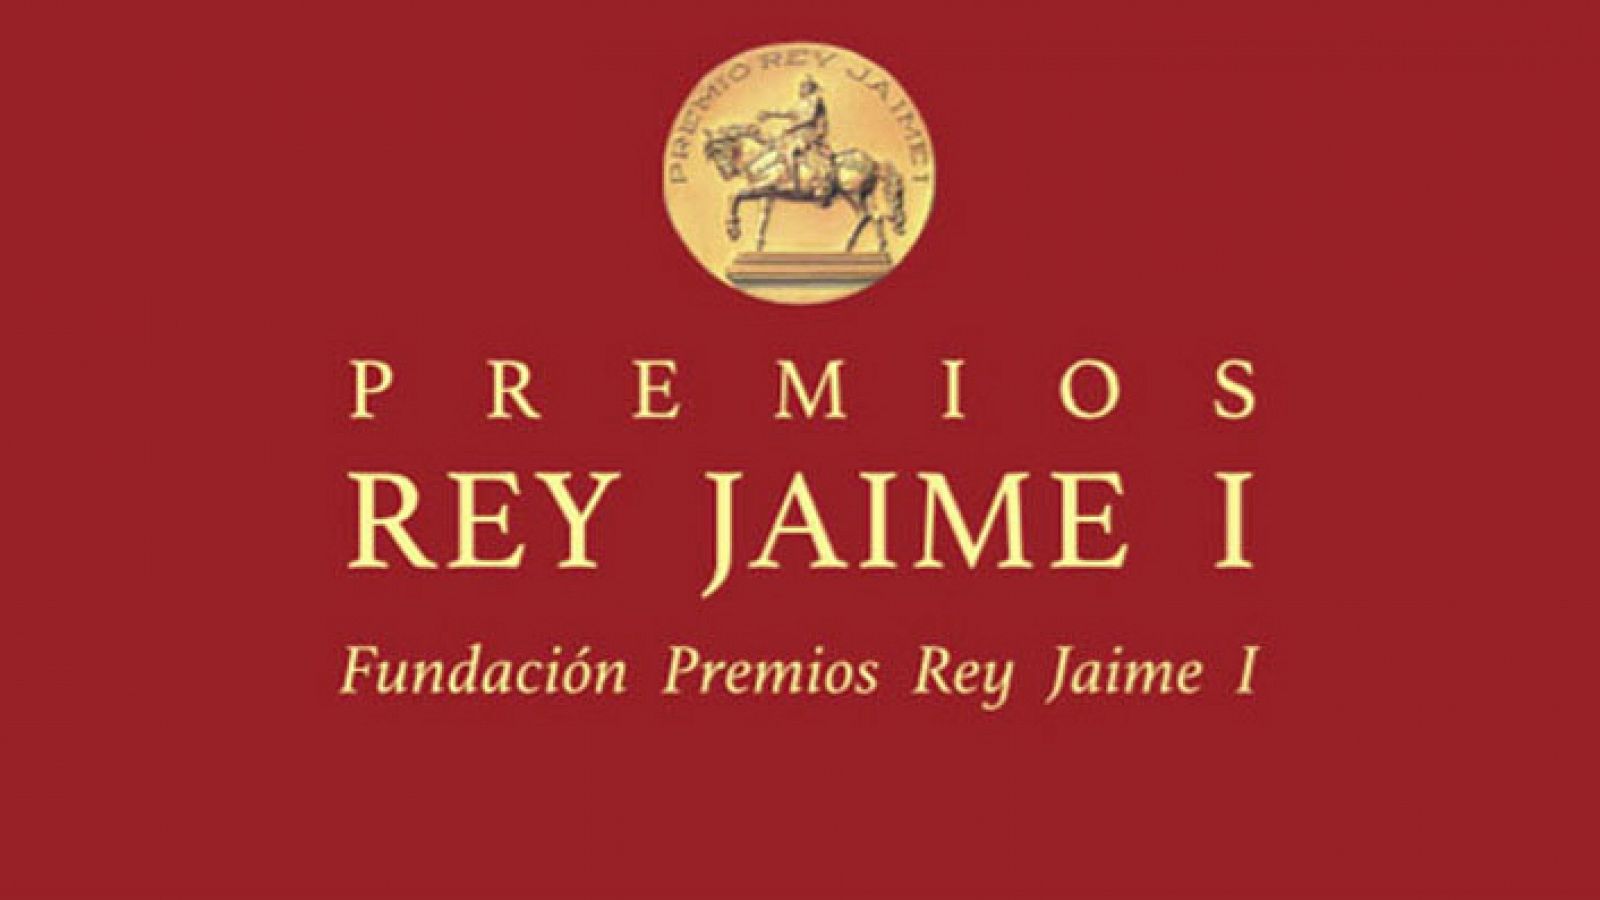 Premios Rey Jaime I 2017